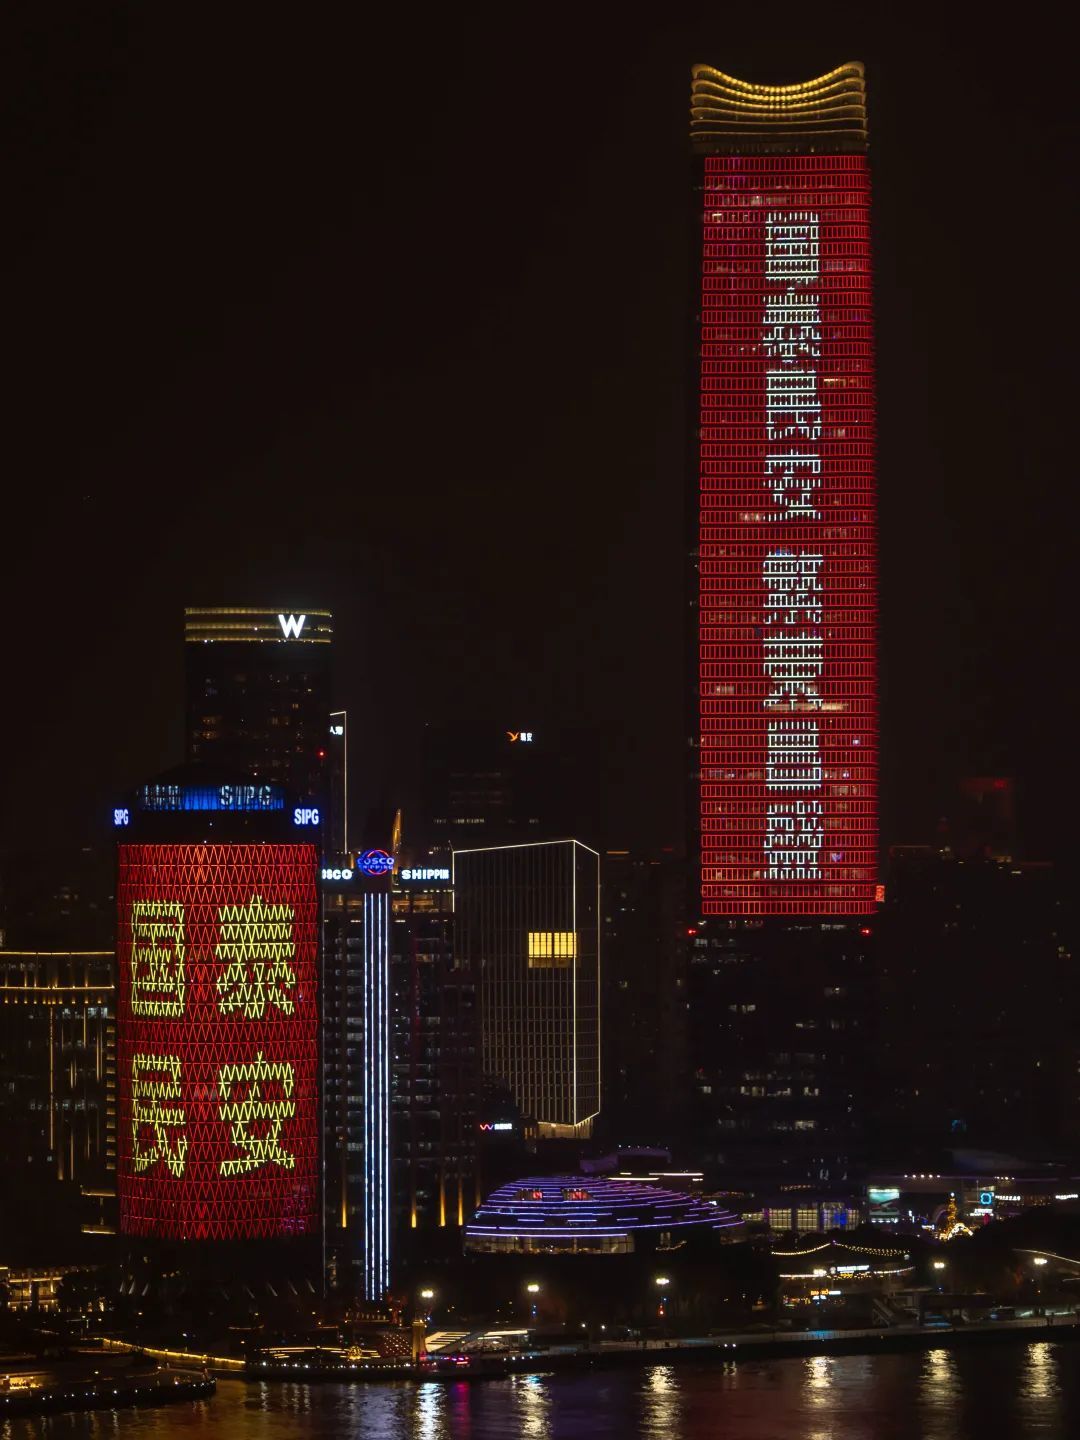 增设临时性户外广告410处，上海龙年景观春节喜庆氛围保持“在线”！